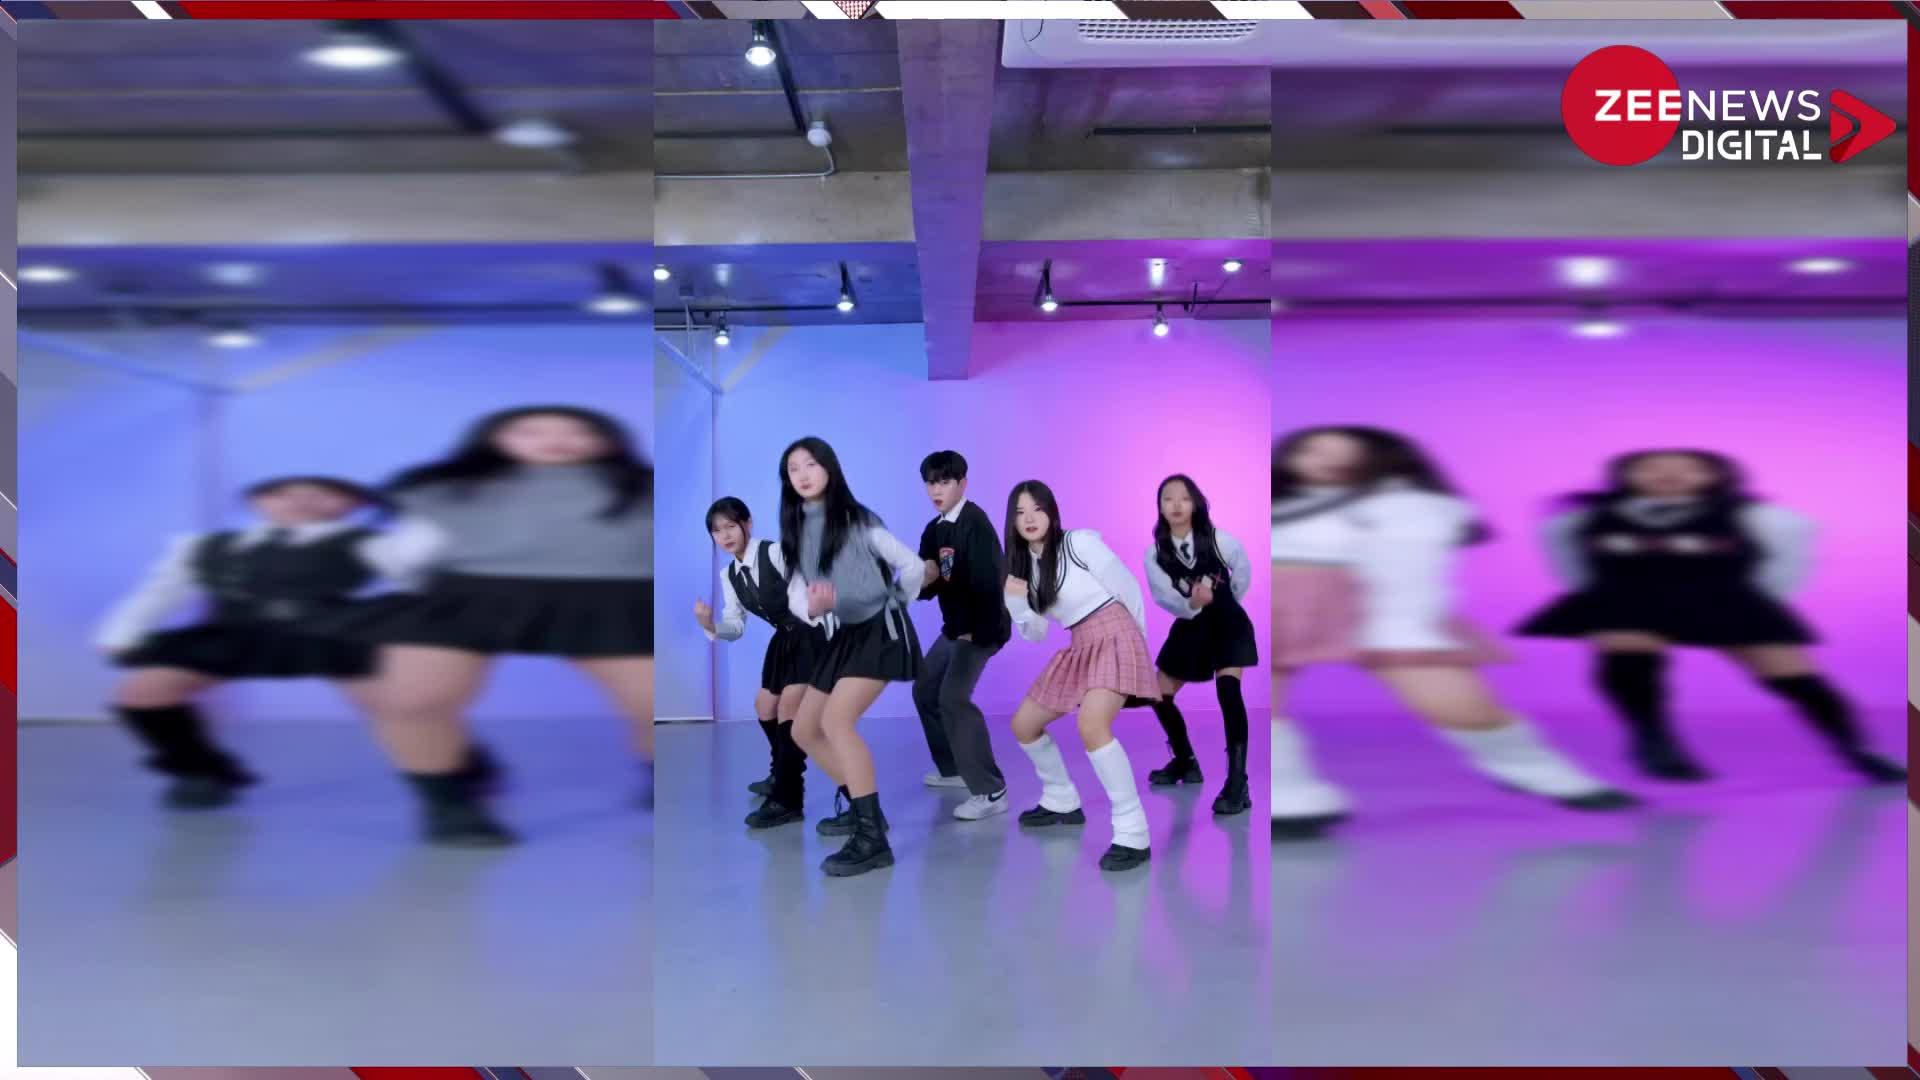 कोरियन डांस ग्रुप ने दिखाया पठान के गाने पर धांसू डांस, भारतीय फैंस ने बरसाया ढेर सें प्यार, देखें वीडियो